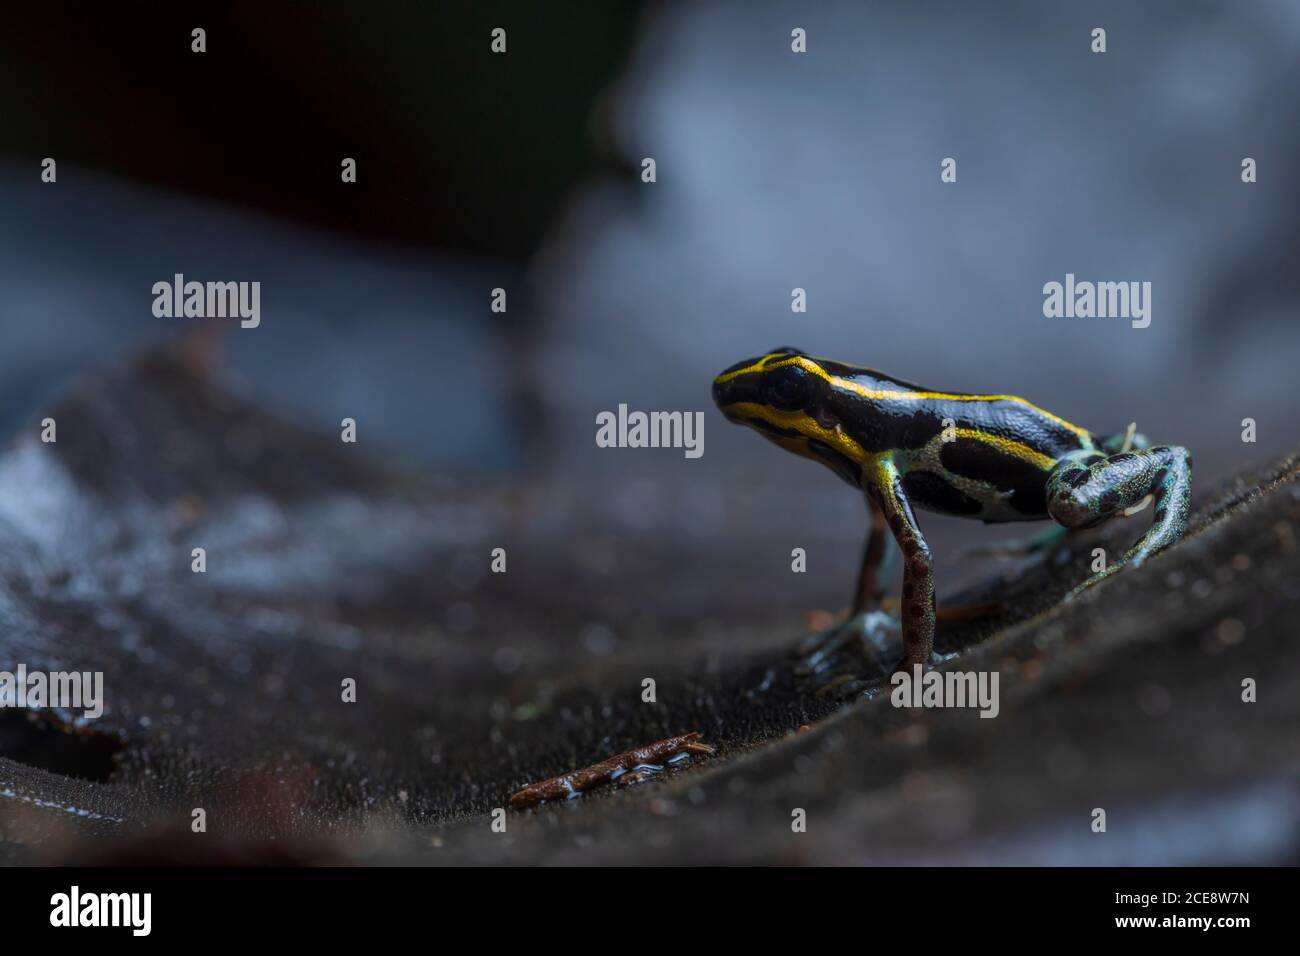 Gros plan de petite grenouille empoisonnée réticulée ou Ranitomeya ventrimaculata avec Des lignes jaunes au dos sont originaires de l'Amérique du Sud nature Banque D'Images